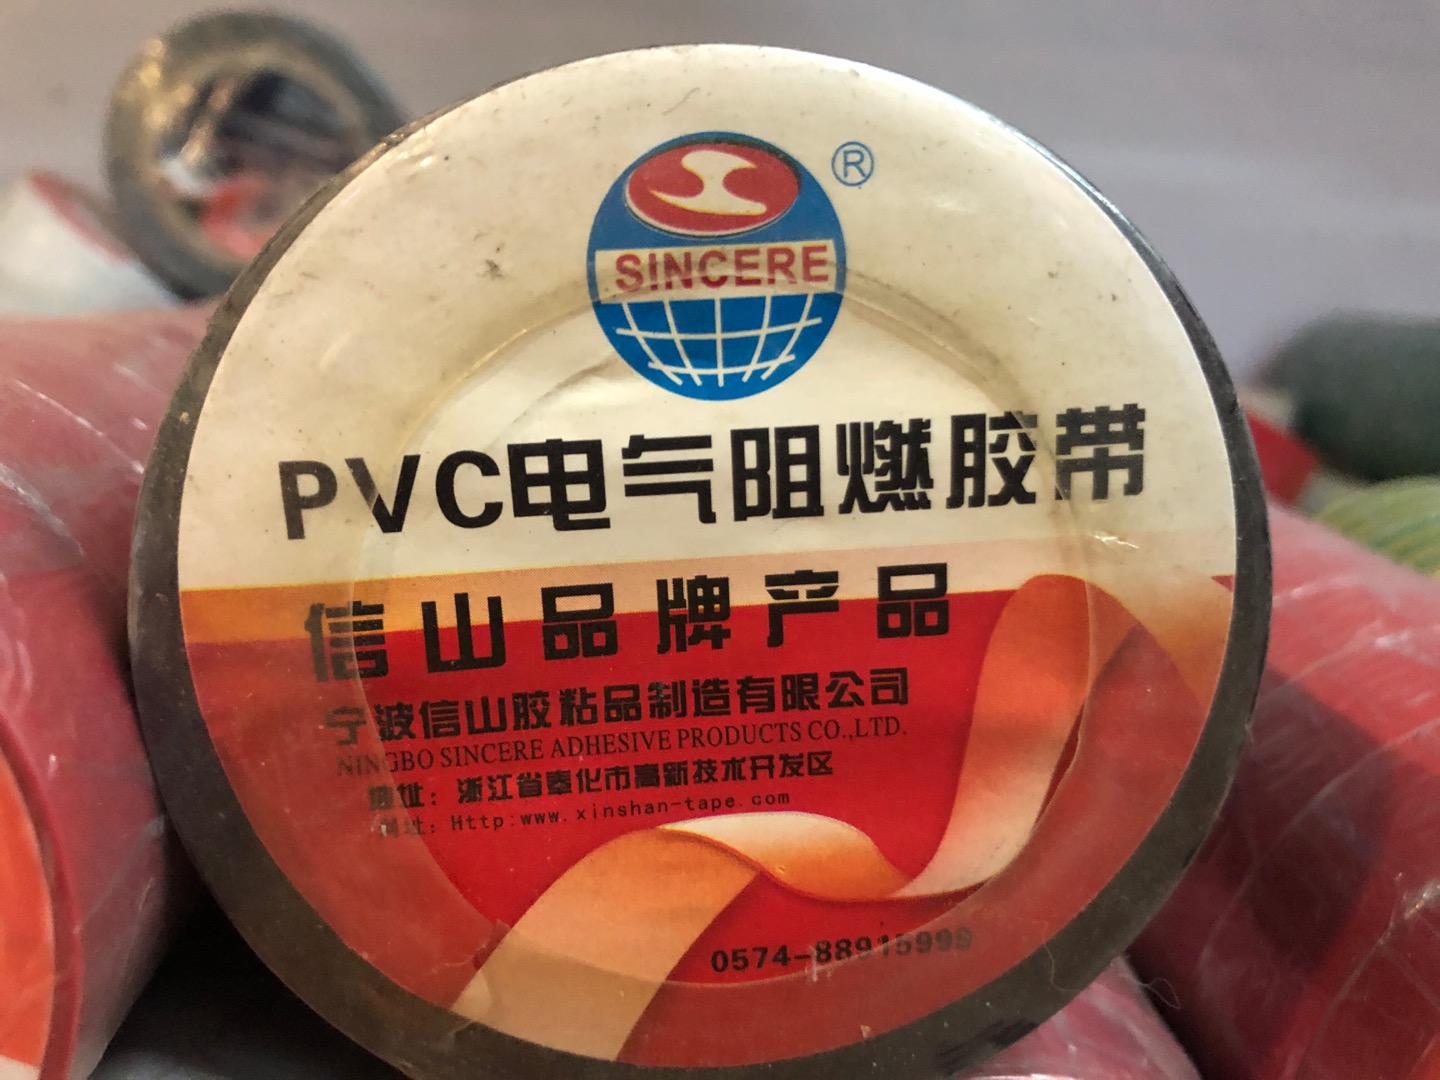 宁波信山胶粘品制造有点公司PVC电气阻燃胶带